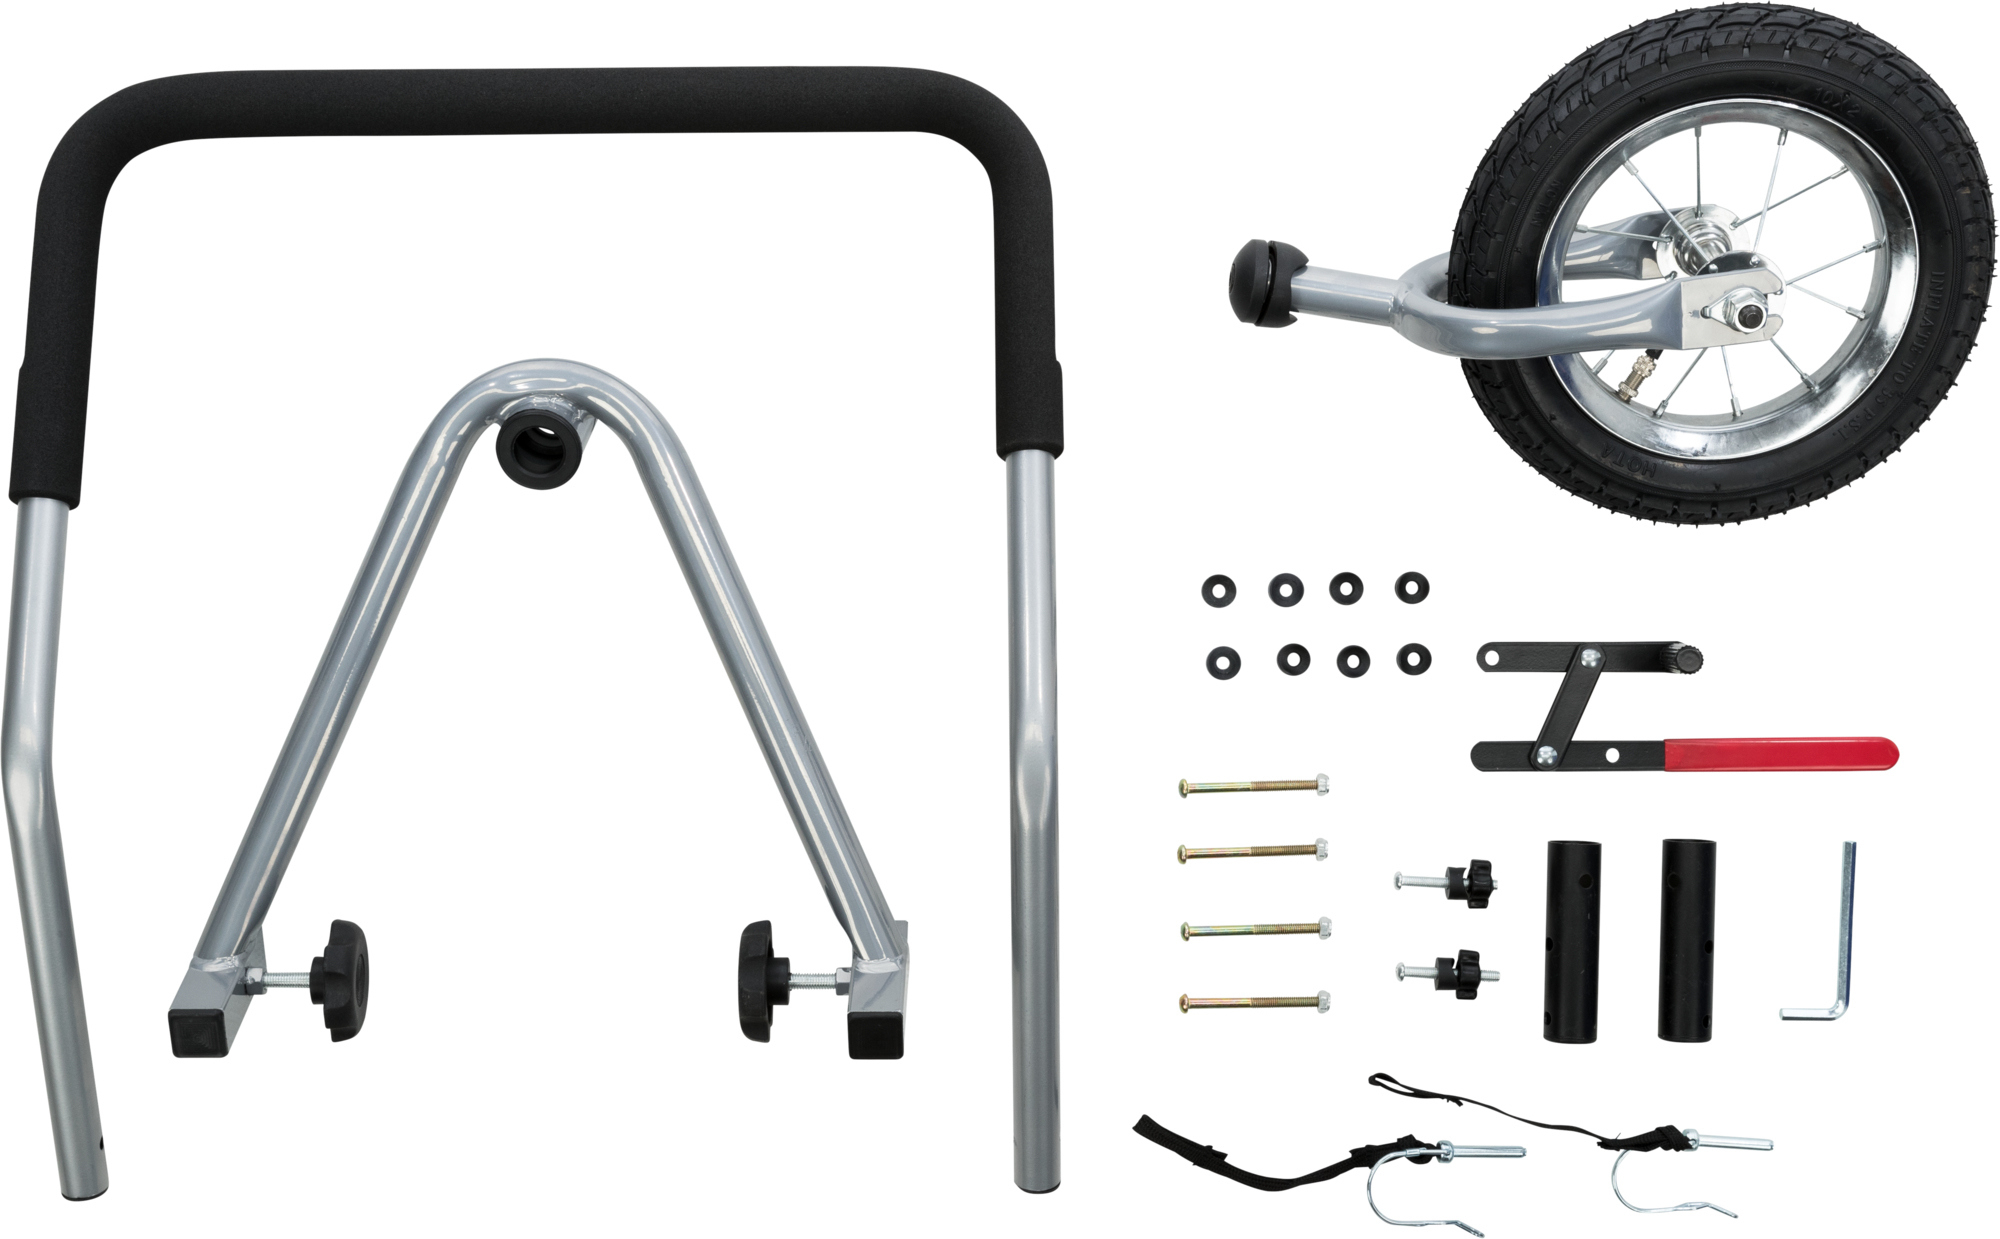 Kit de conversão Jogger para reboque de bicicleta